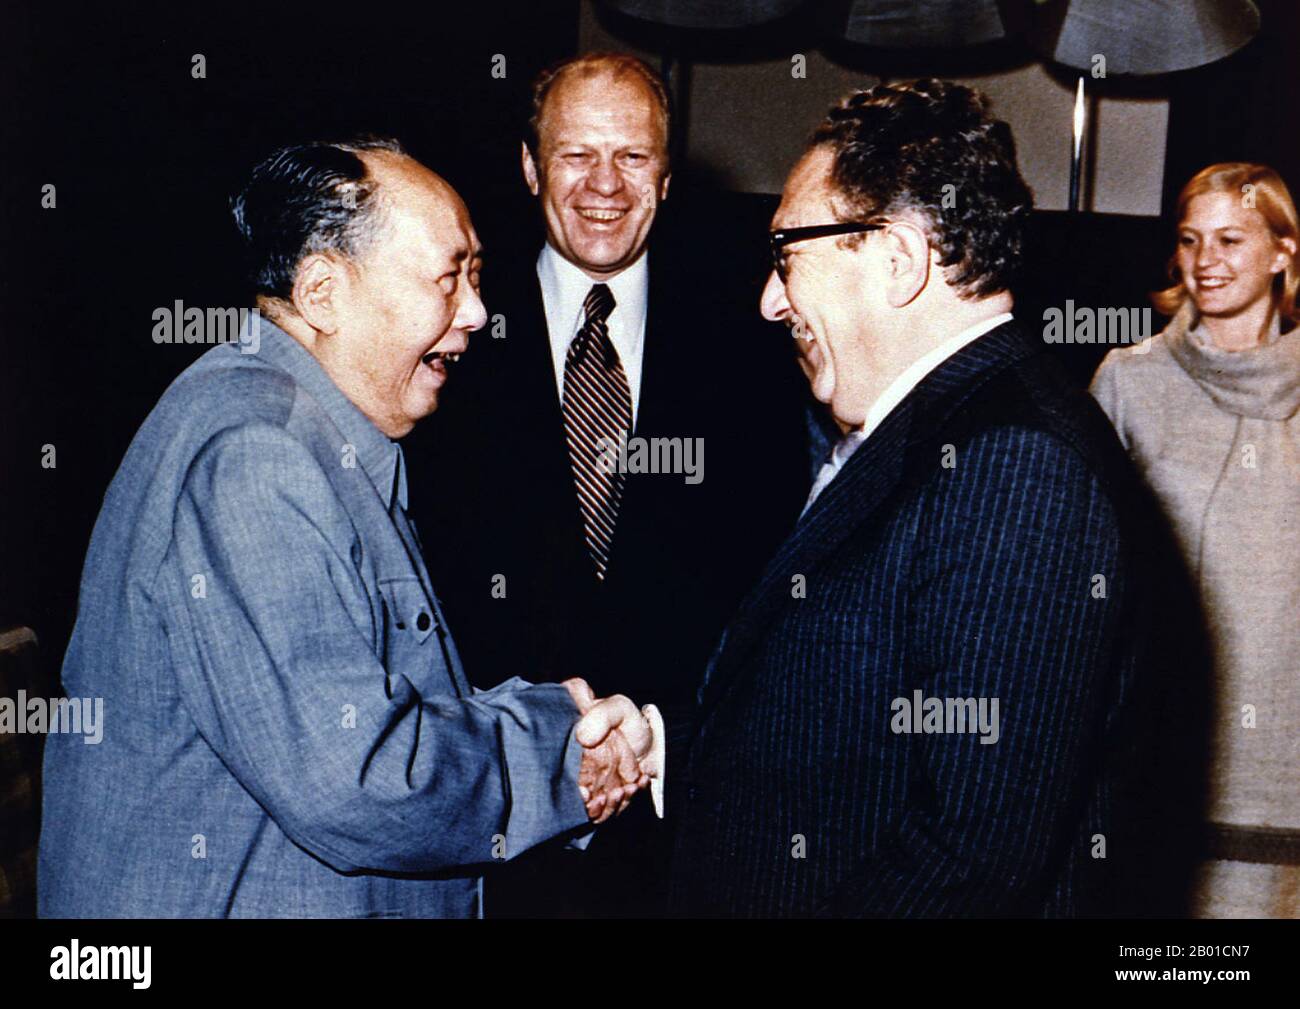 China/USA: Vorsitzender Mao Zedong schüttelt sich als Präsident Henry Kissinger die Hände Gerald Ford und seine Tochter Susan Ford Look On, Peking, 2. Dezember 1975 Kissinger diente als nationaler Sicherheitsberater und später gleichzeitig als Staatssekretär in den Verwaltungen der Präsidenten Richard Nixon und Gerald Ford. Nach seiner Amtszeit wurde seine Meinung immer noch von vielen folgenden Präsidenten und führenden Politikern der Welt gesucht. Kissinger, ein Befürworter der Realpolitik, spielte zwischen 1969 und 1977 eine dominierende Rolle in der US-Außenpolitik. In dieser Zeit war er Vorreiter bei der Entspannungspolitik mit der Sowjetunion. Stockfoto